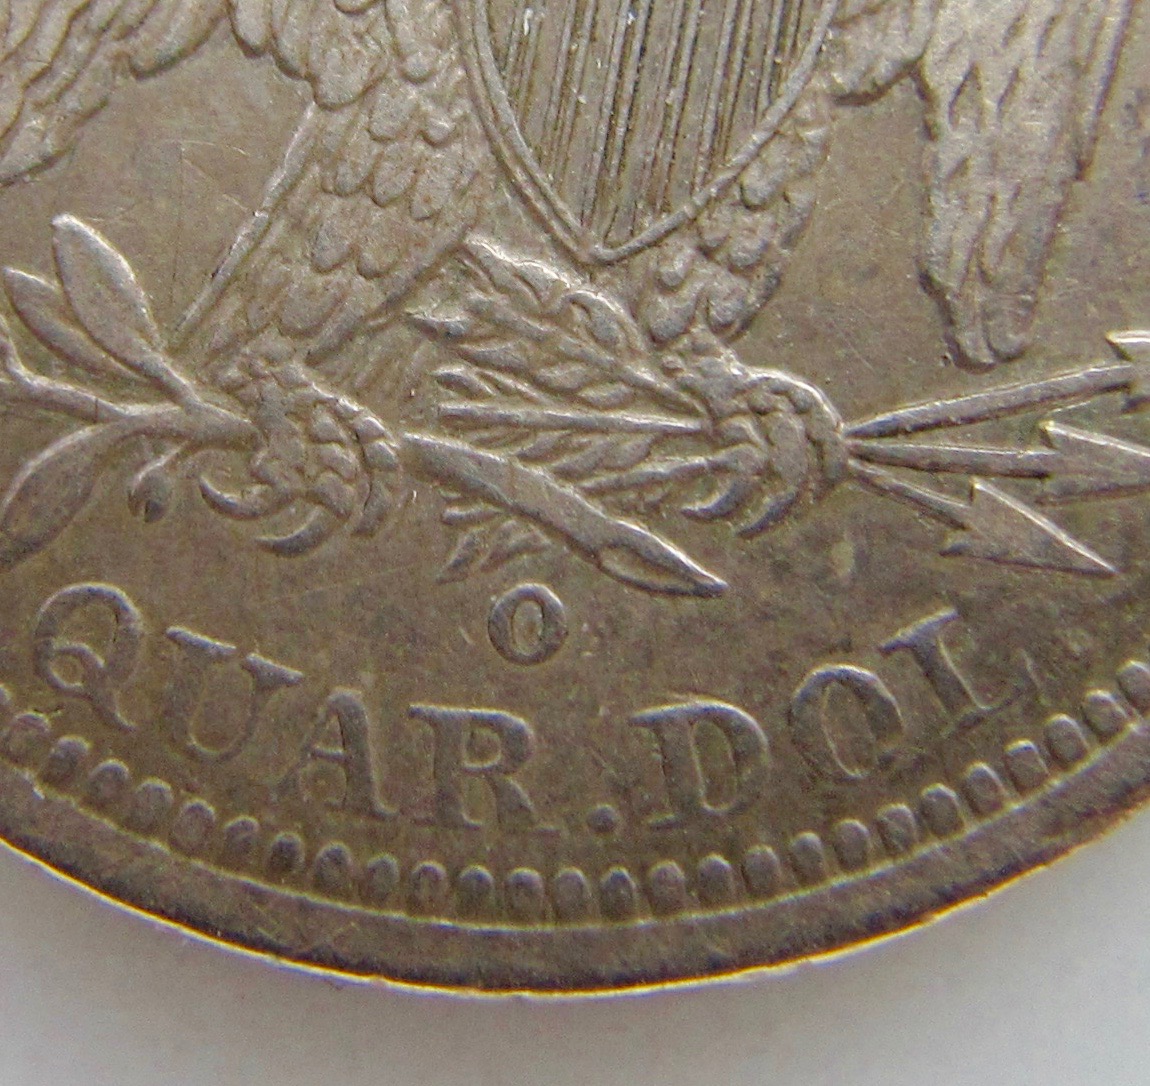 1842 O Seated Quarter Reverse Close-up - 1.jpg